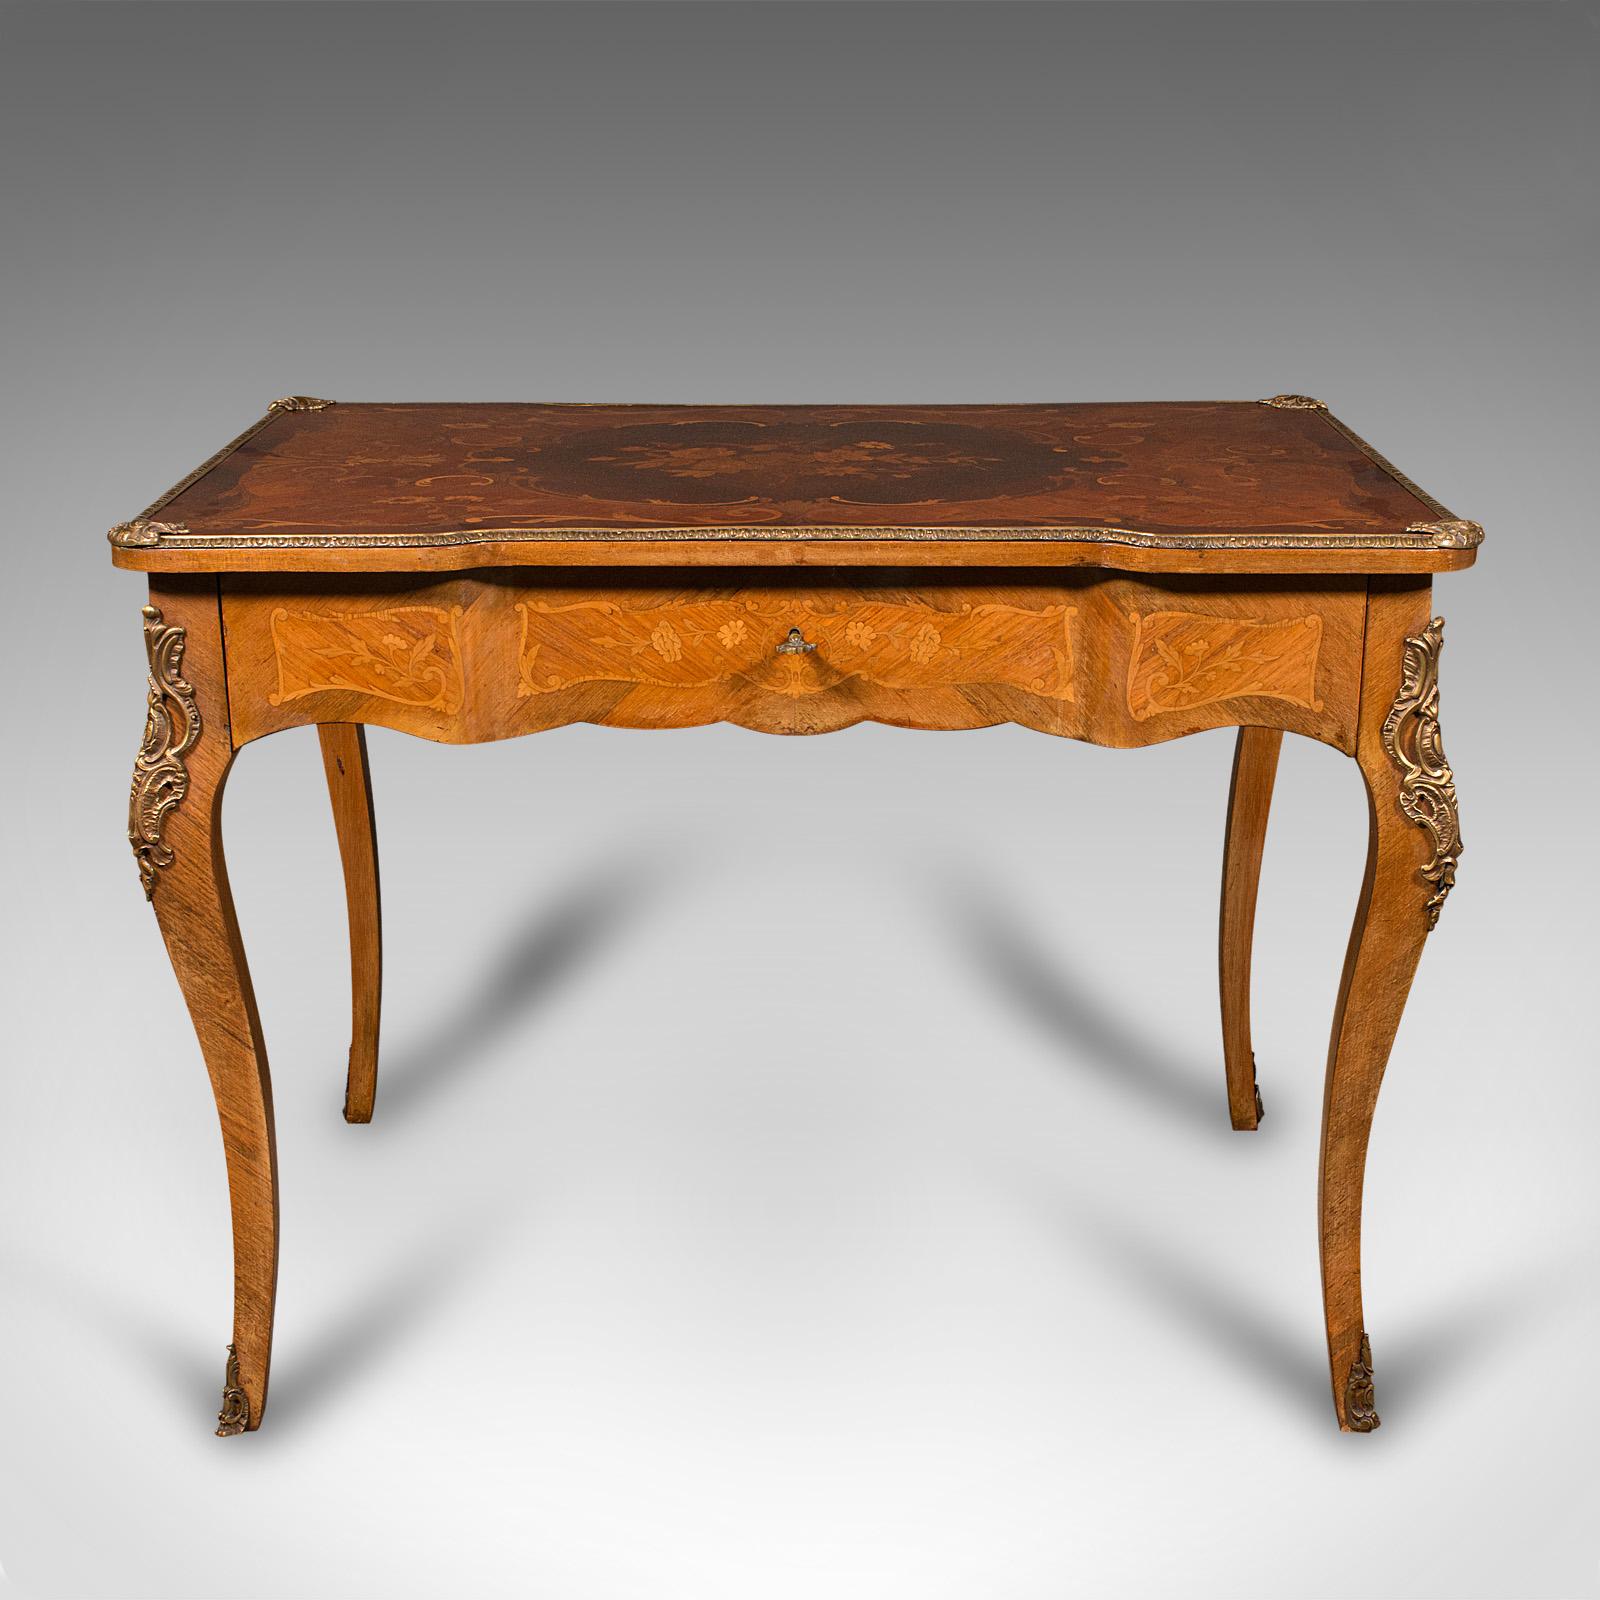 Il s'agit d'un bureau antique. Table de centre décorative française en bois de roi, de style Louis XV, avec plateau en marqueterie, datant de la fin de la période victorienne, vers 1900.

Orné d'une marqueterie et d'un savoir-faire exquis - une